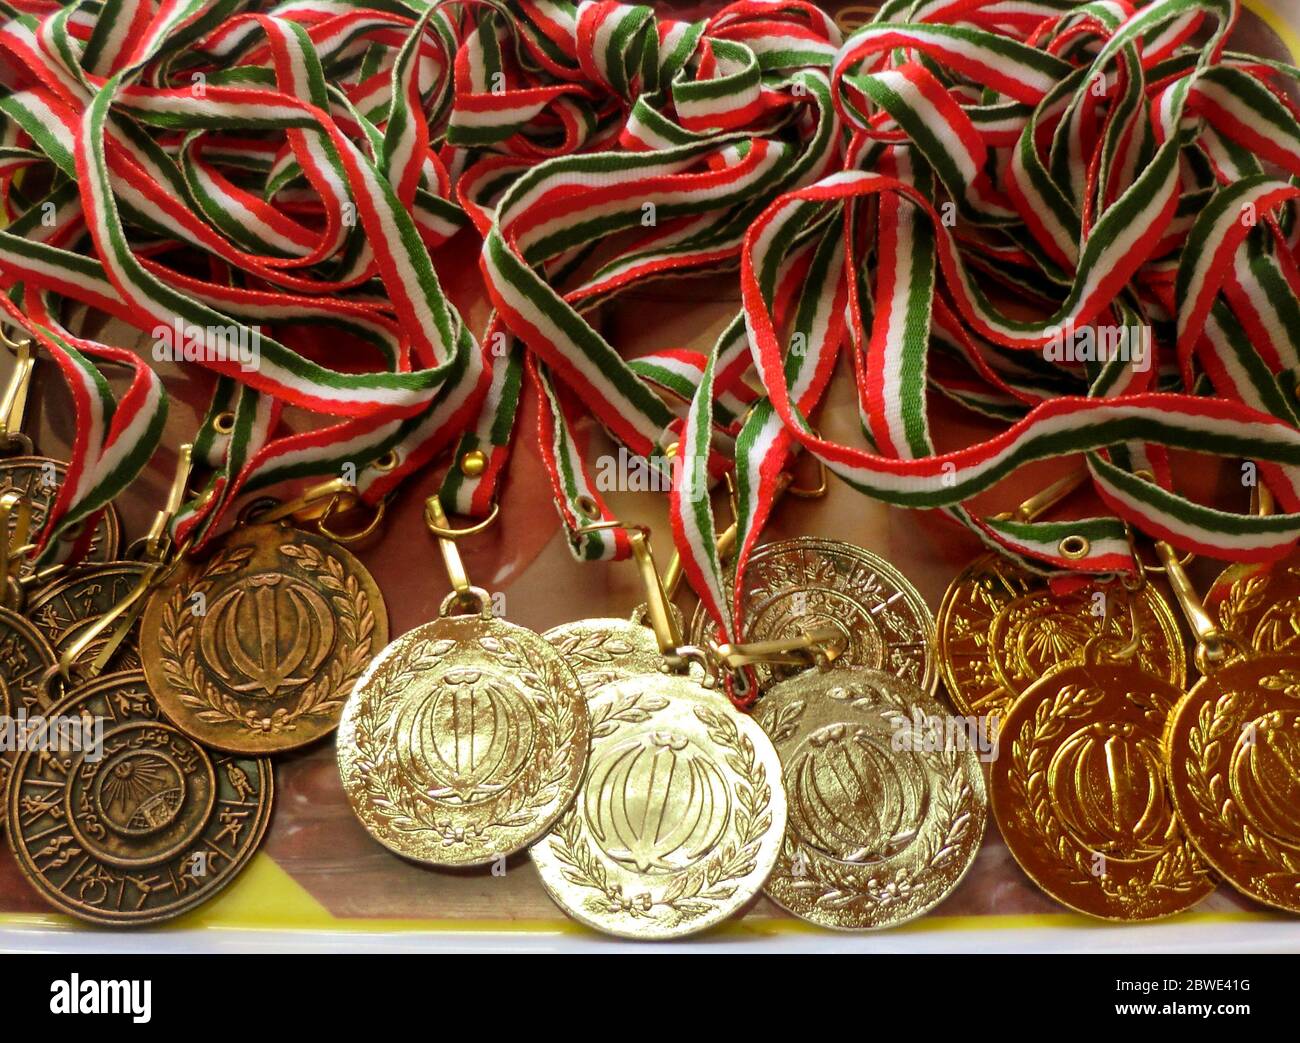 Goldene, silberne, bronzene Sportmedaille mit rotem, weißem und grünem Band. Gewinner-Auszeichnungen. Übersetzung des Textes auf Medaillen sind "islamische republik iran. Stockfoto